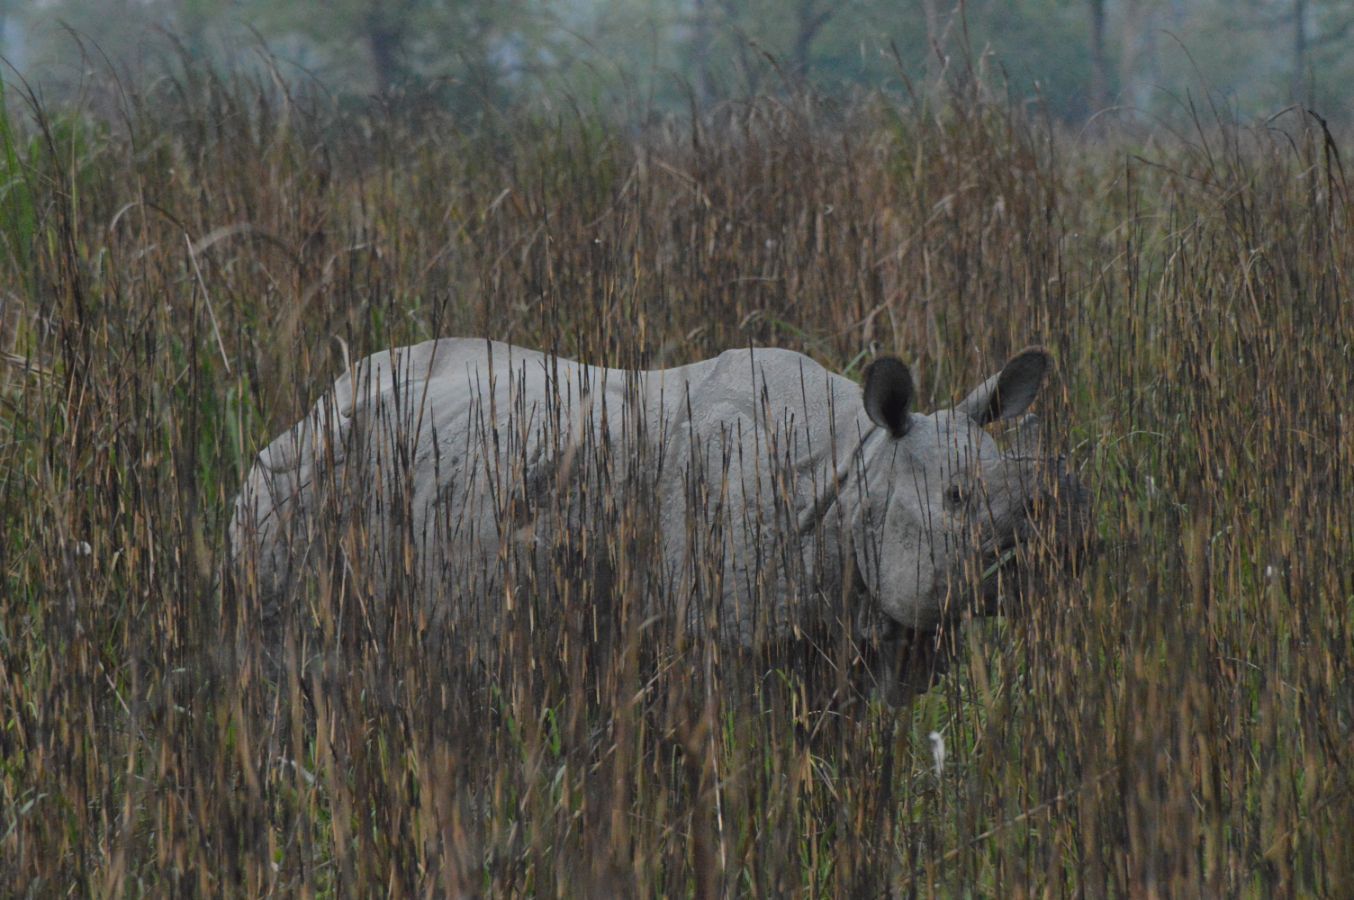 Wild rhino in Kaziranga